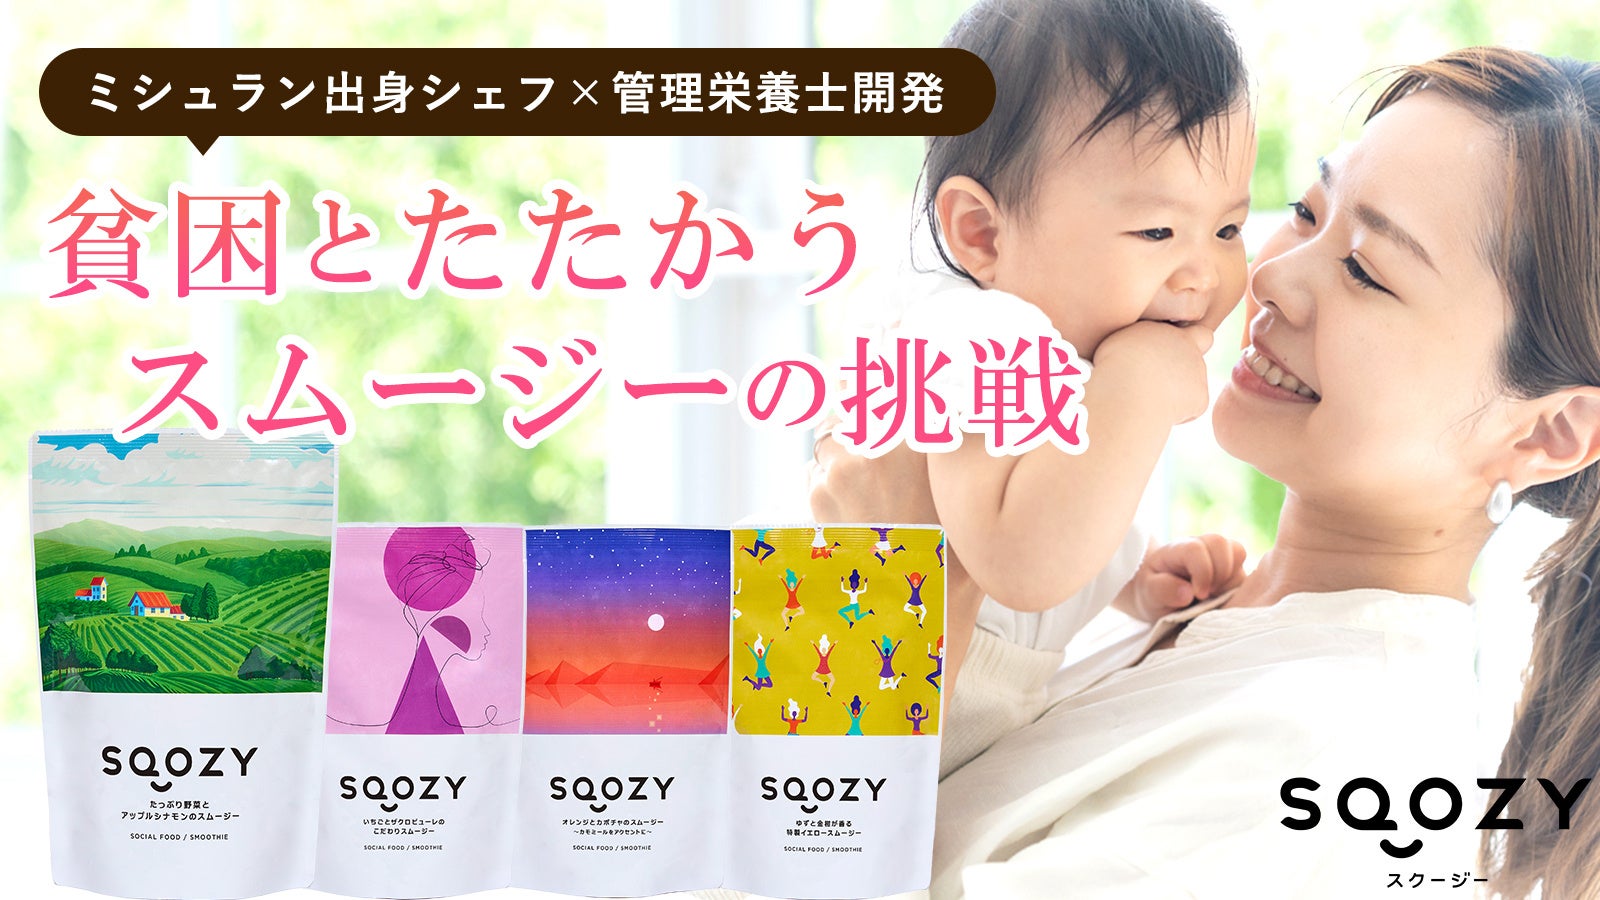 【新商品】元ミシュランシェフ開発の冷凍スムージー「SQOZY」が新登場！Makuakeにて先行販売開始